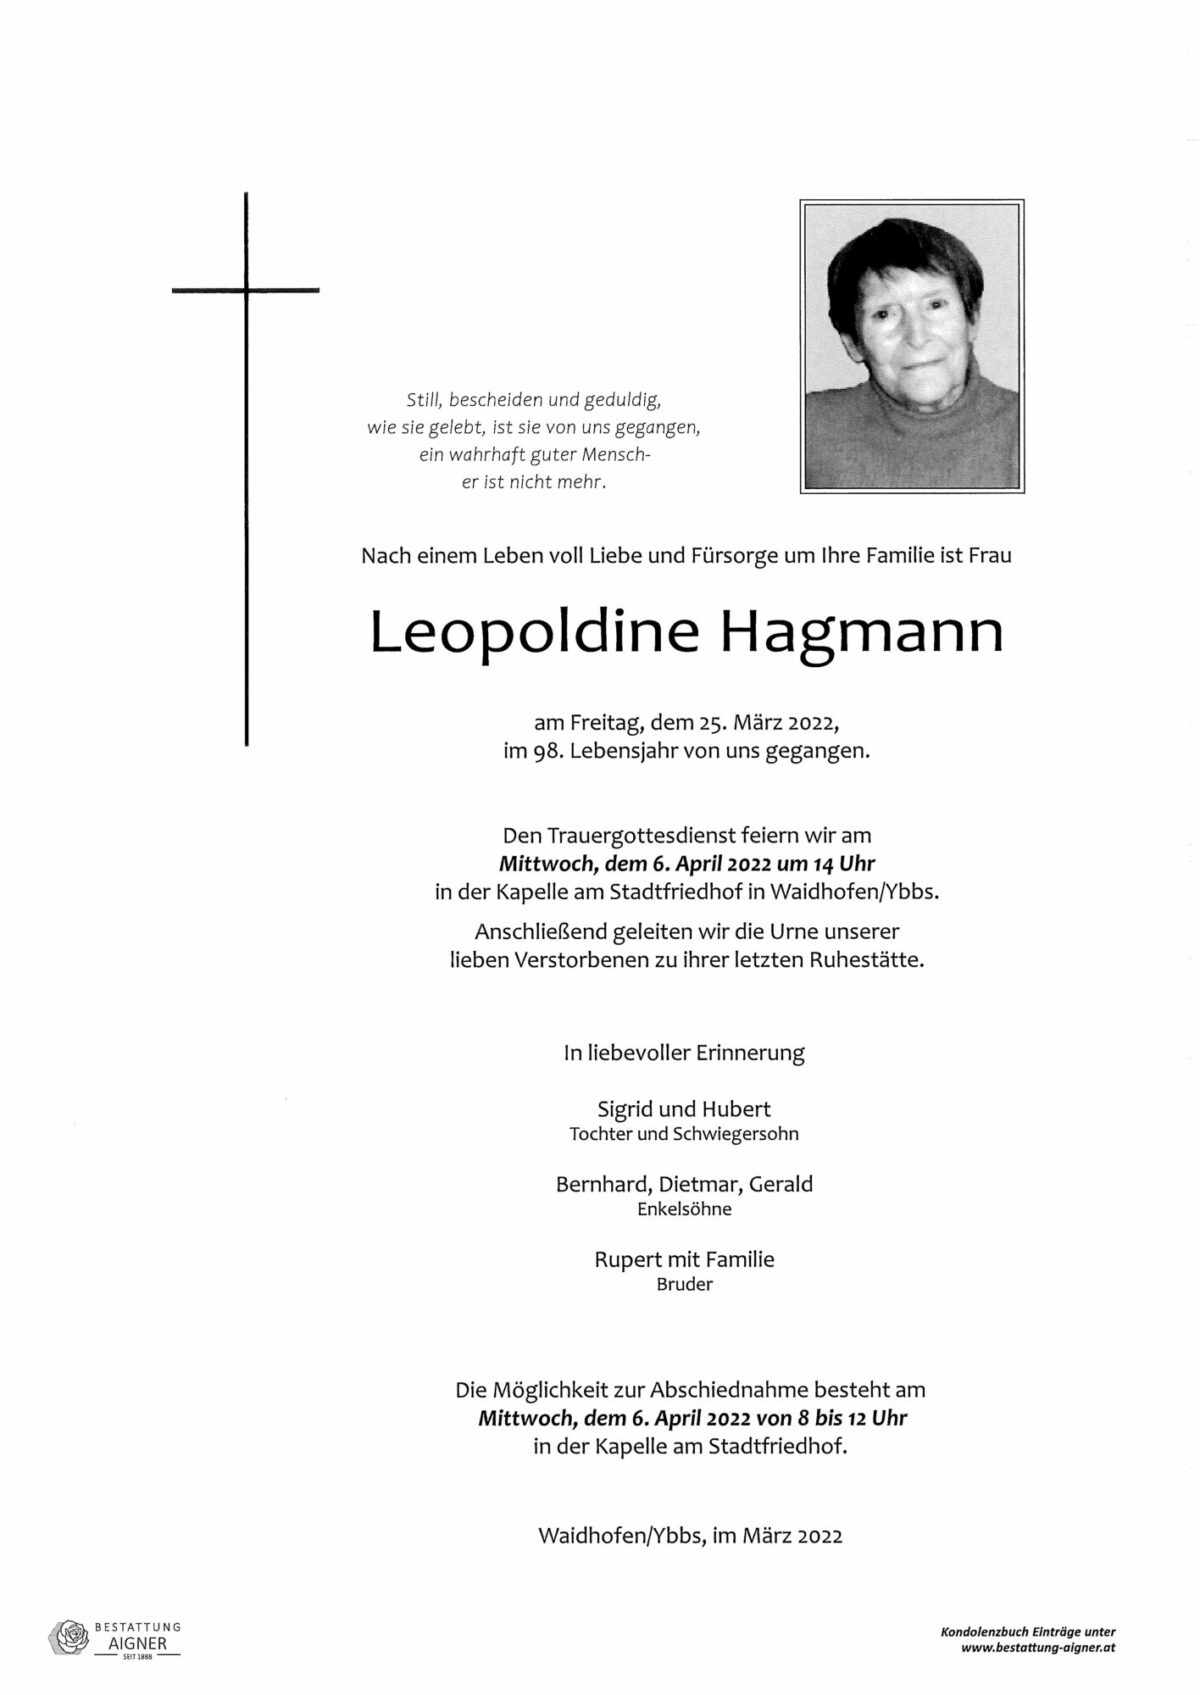 Leopoldine Hagmann